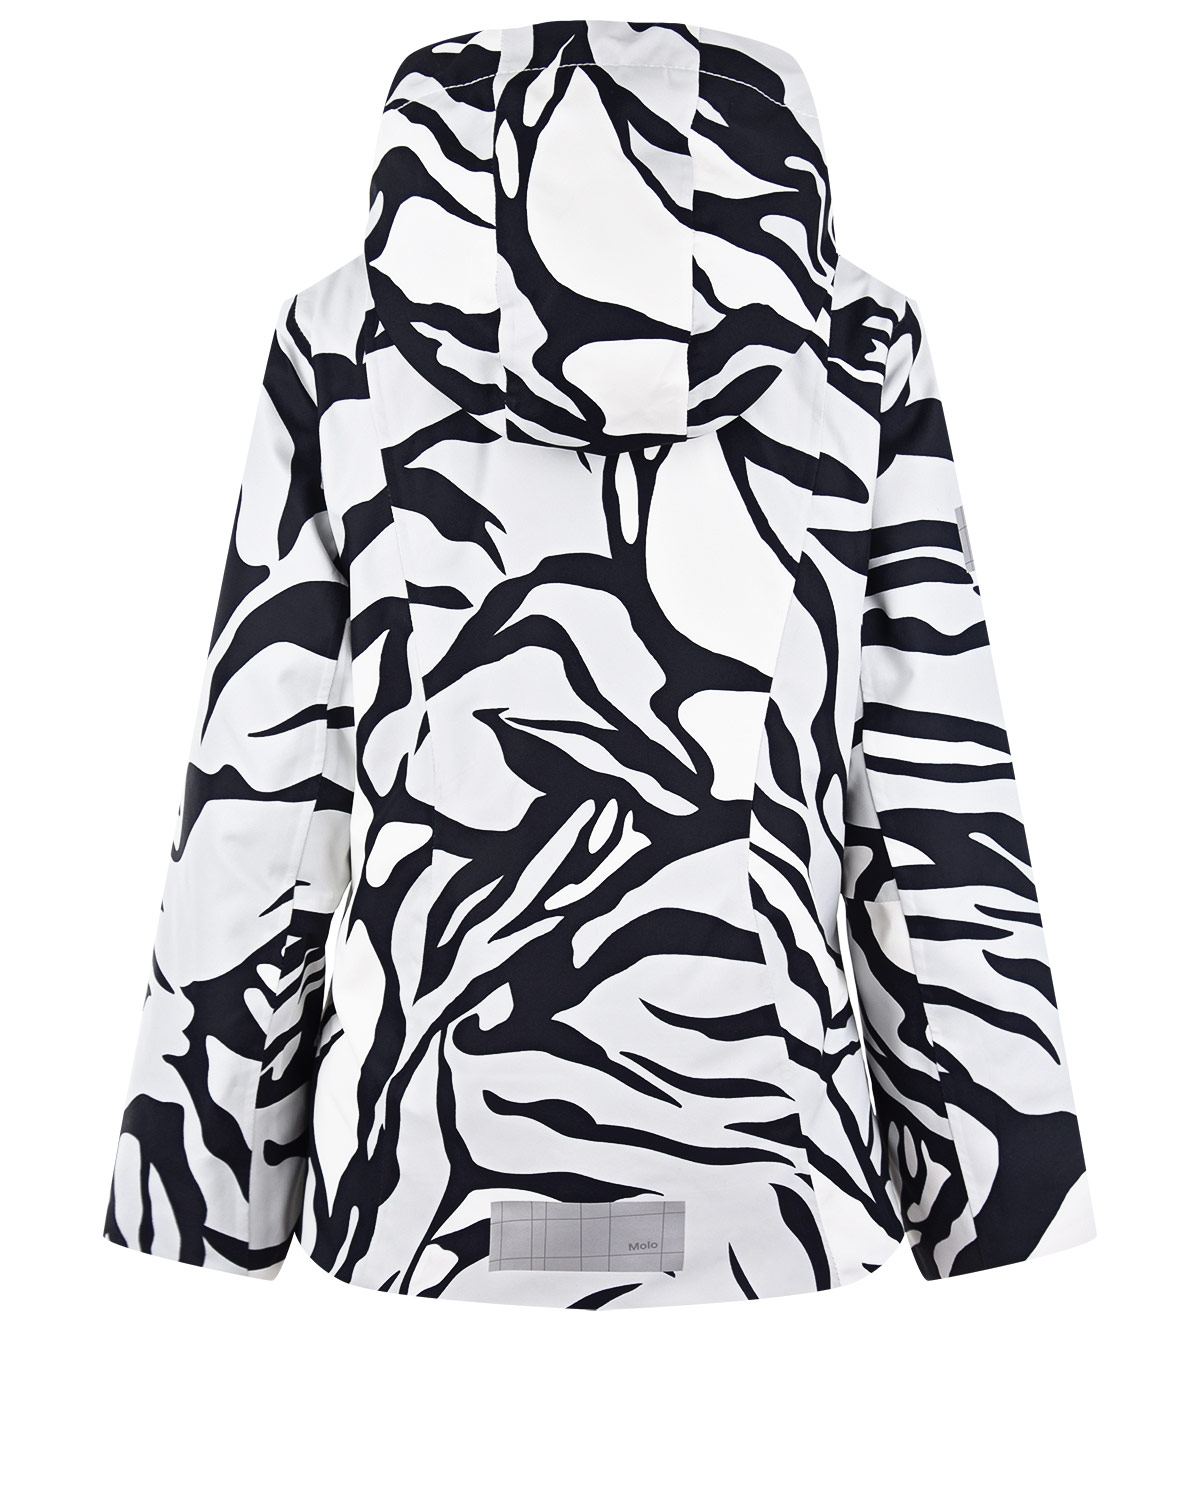 Комплект с принтом "зебра" (куртка, брюки, подтяжки) Molo детский, размер 140, цвет нет цвета Комплект с принтом "зебра" (куртка, брюки, подтяжки) Molo детский - фото 3